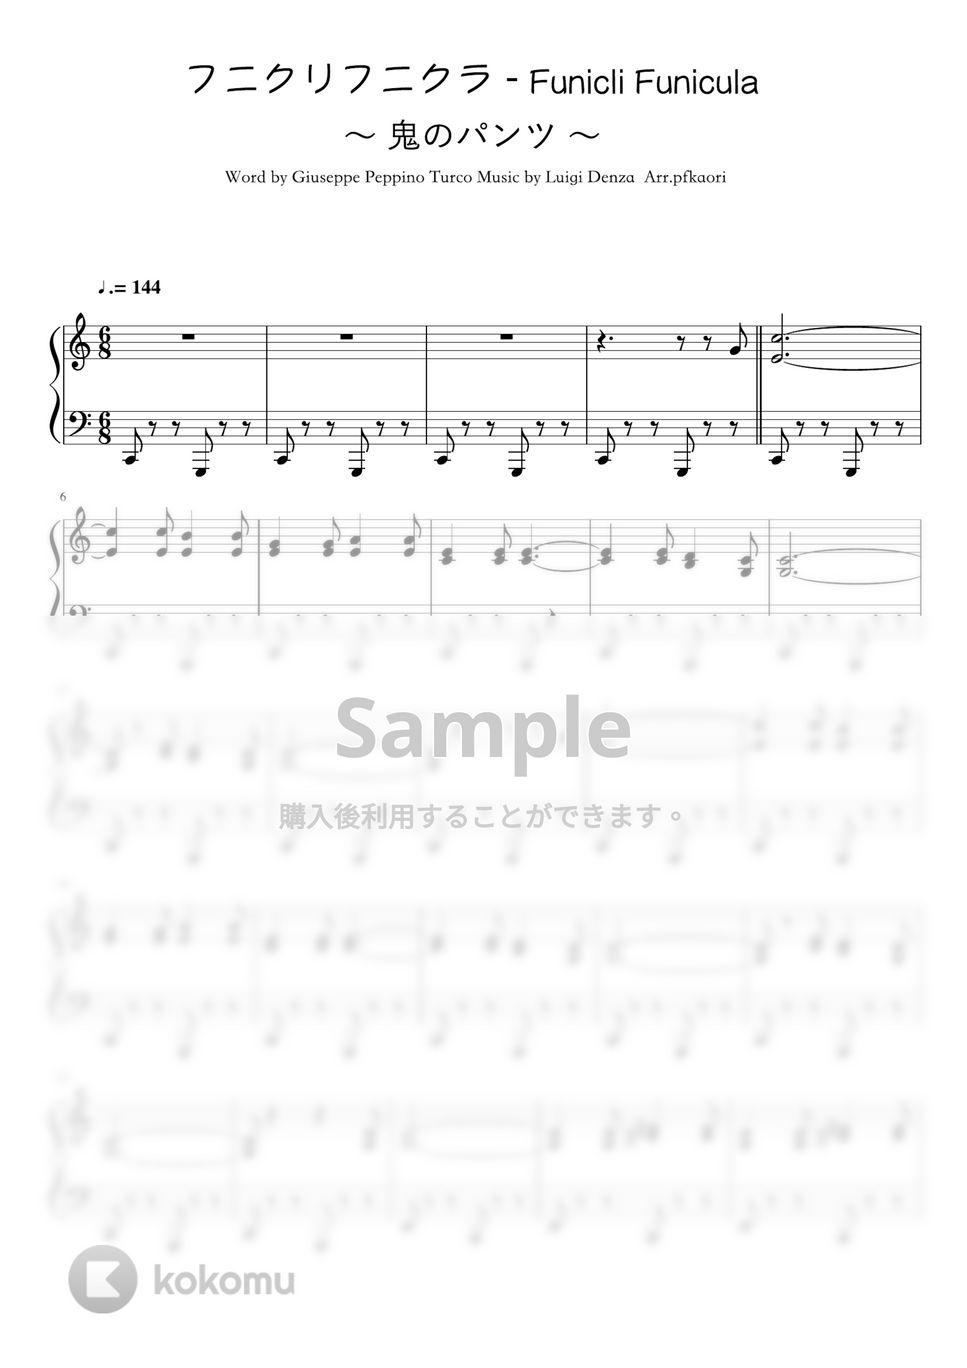 ルイージデンツァ - フニクリフニクラ (Cdur・ピアノソロ中級) by pfkaori